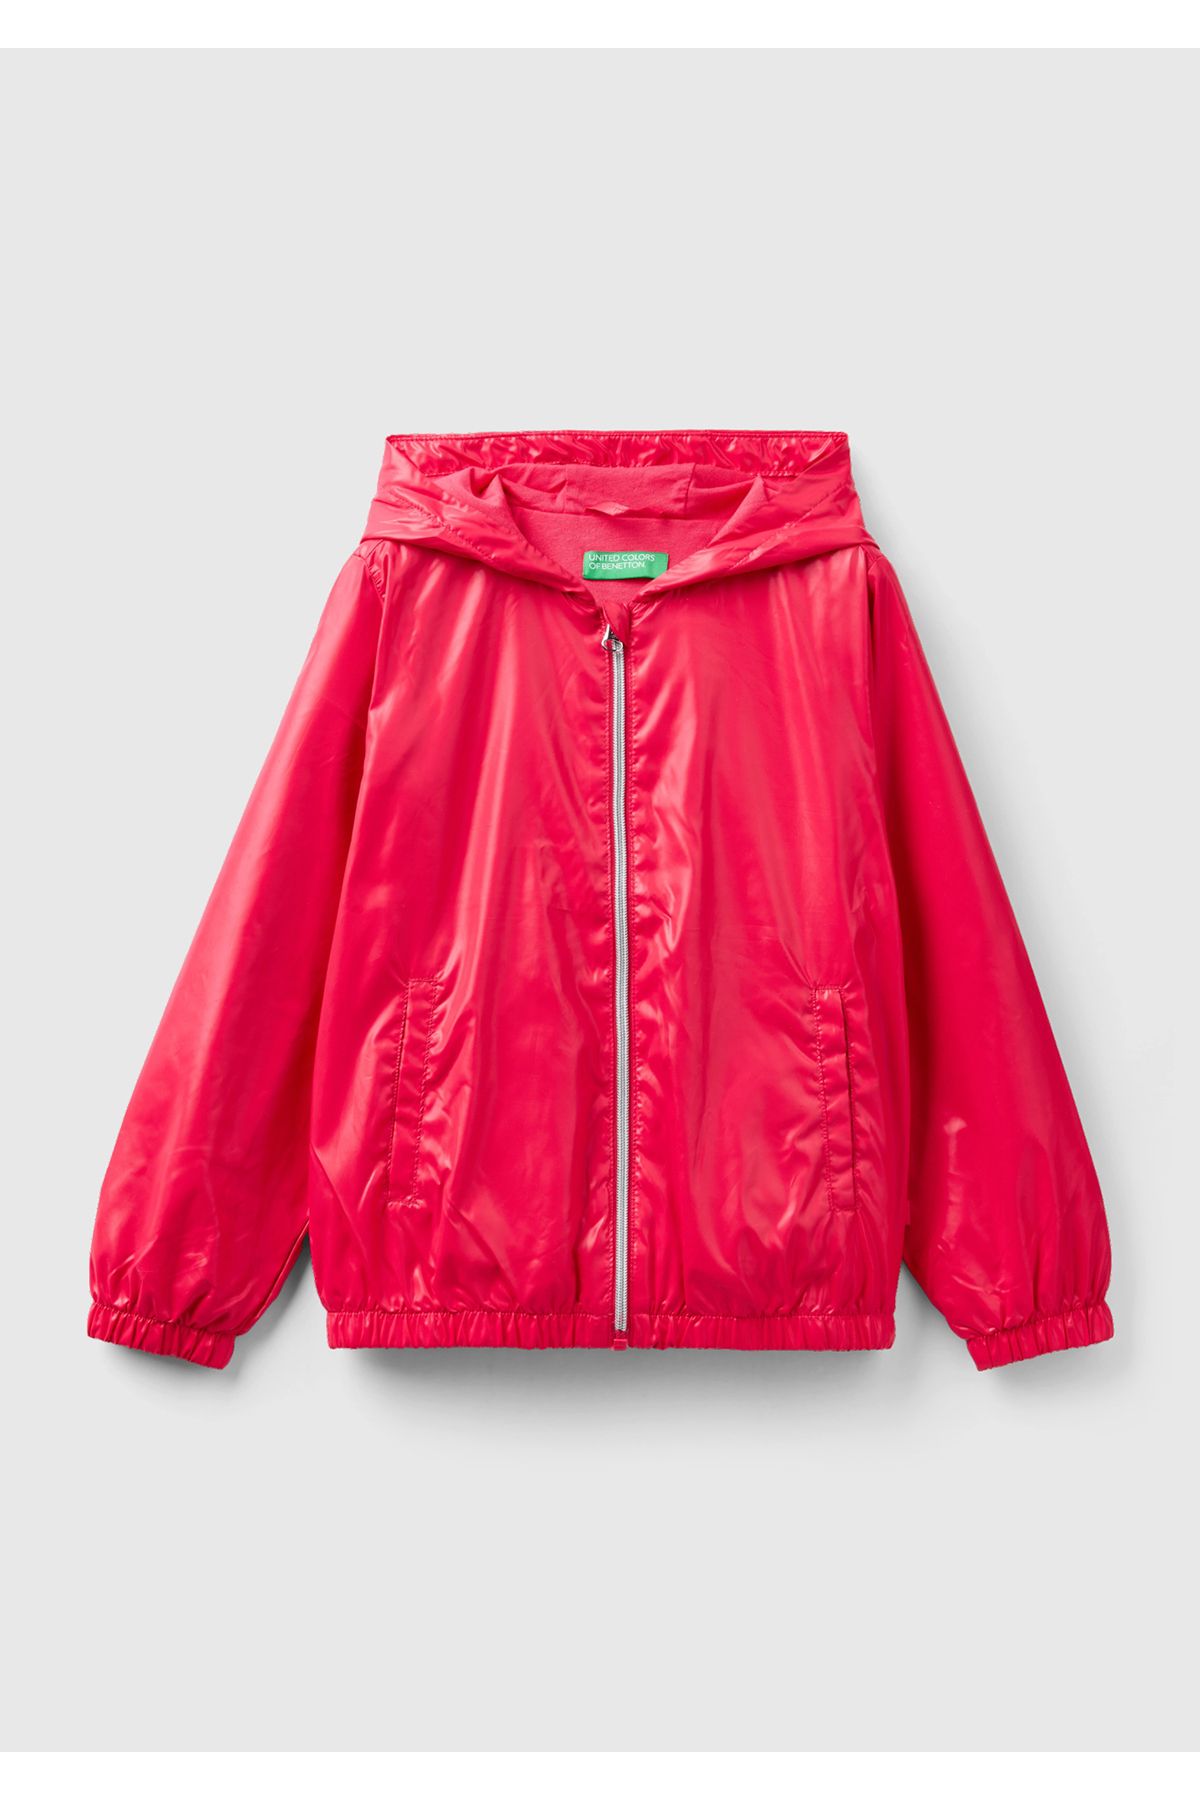 United Colors of Benetton Kız Çocuk Fuşya Logolu Jersey Astarlı Yağmurluk